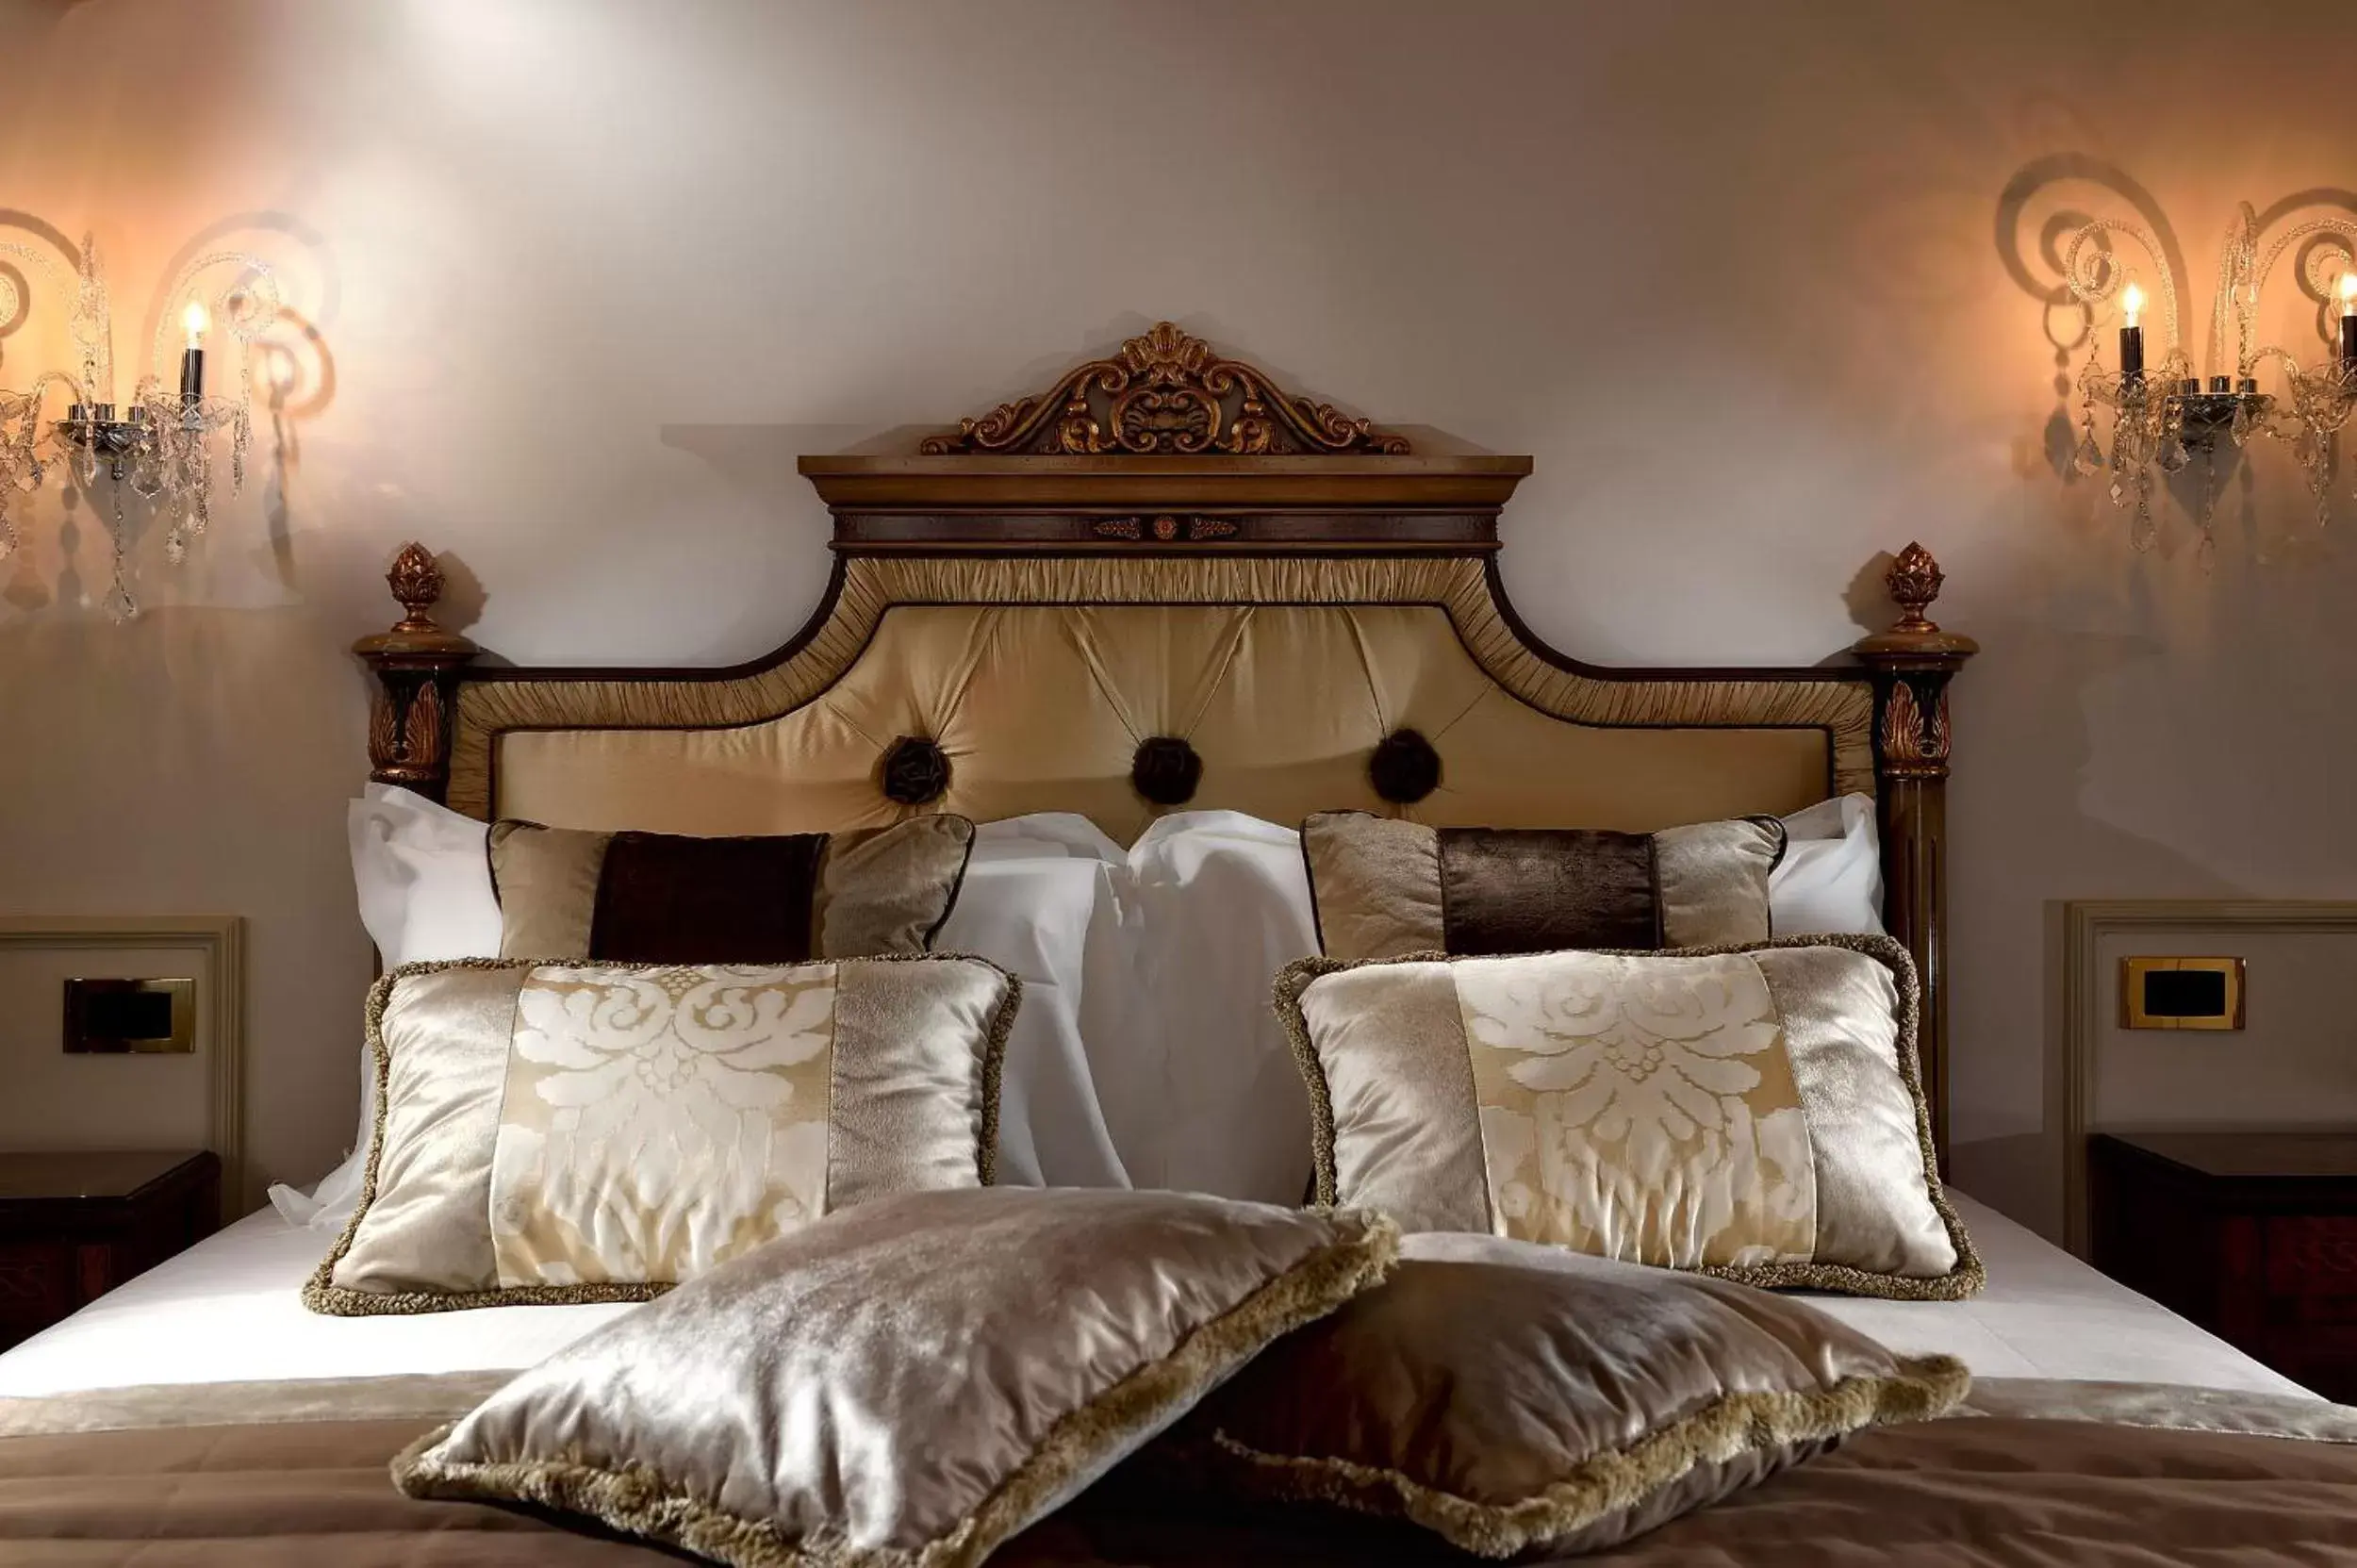 Decorative detail, Bed in Hotel Ai Cavalieri di Venezia